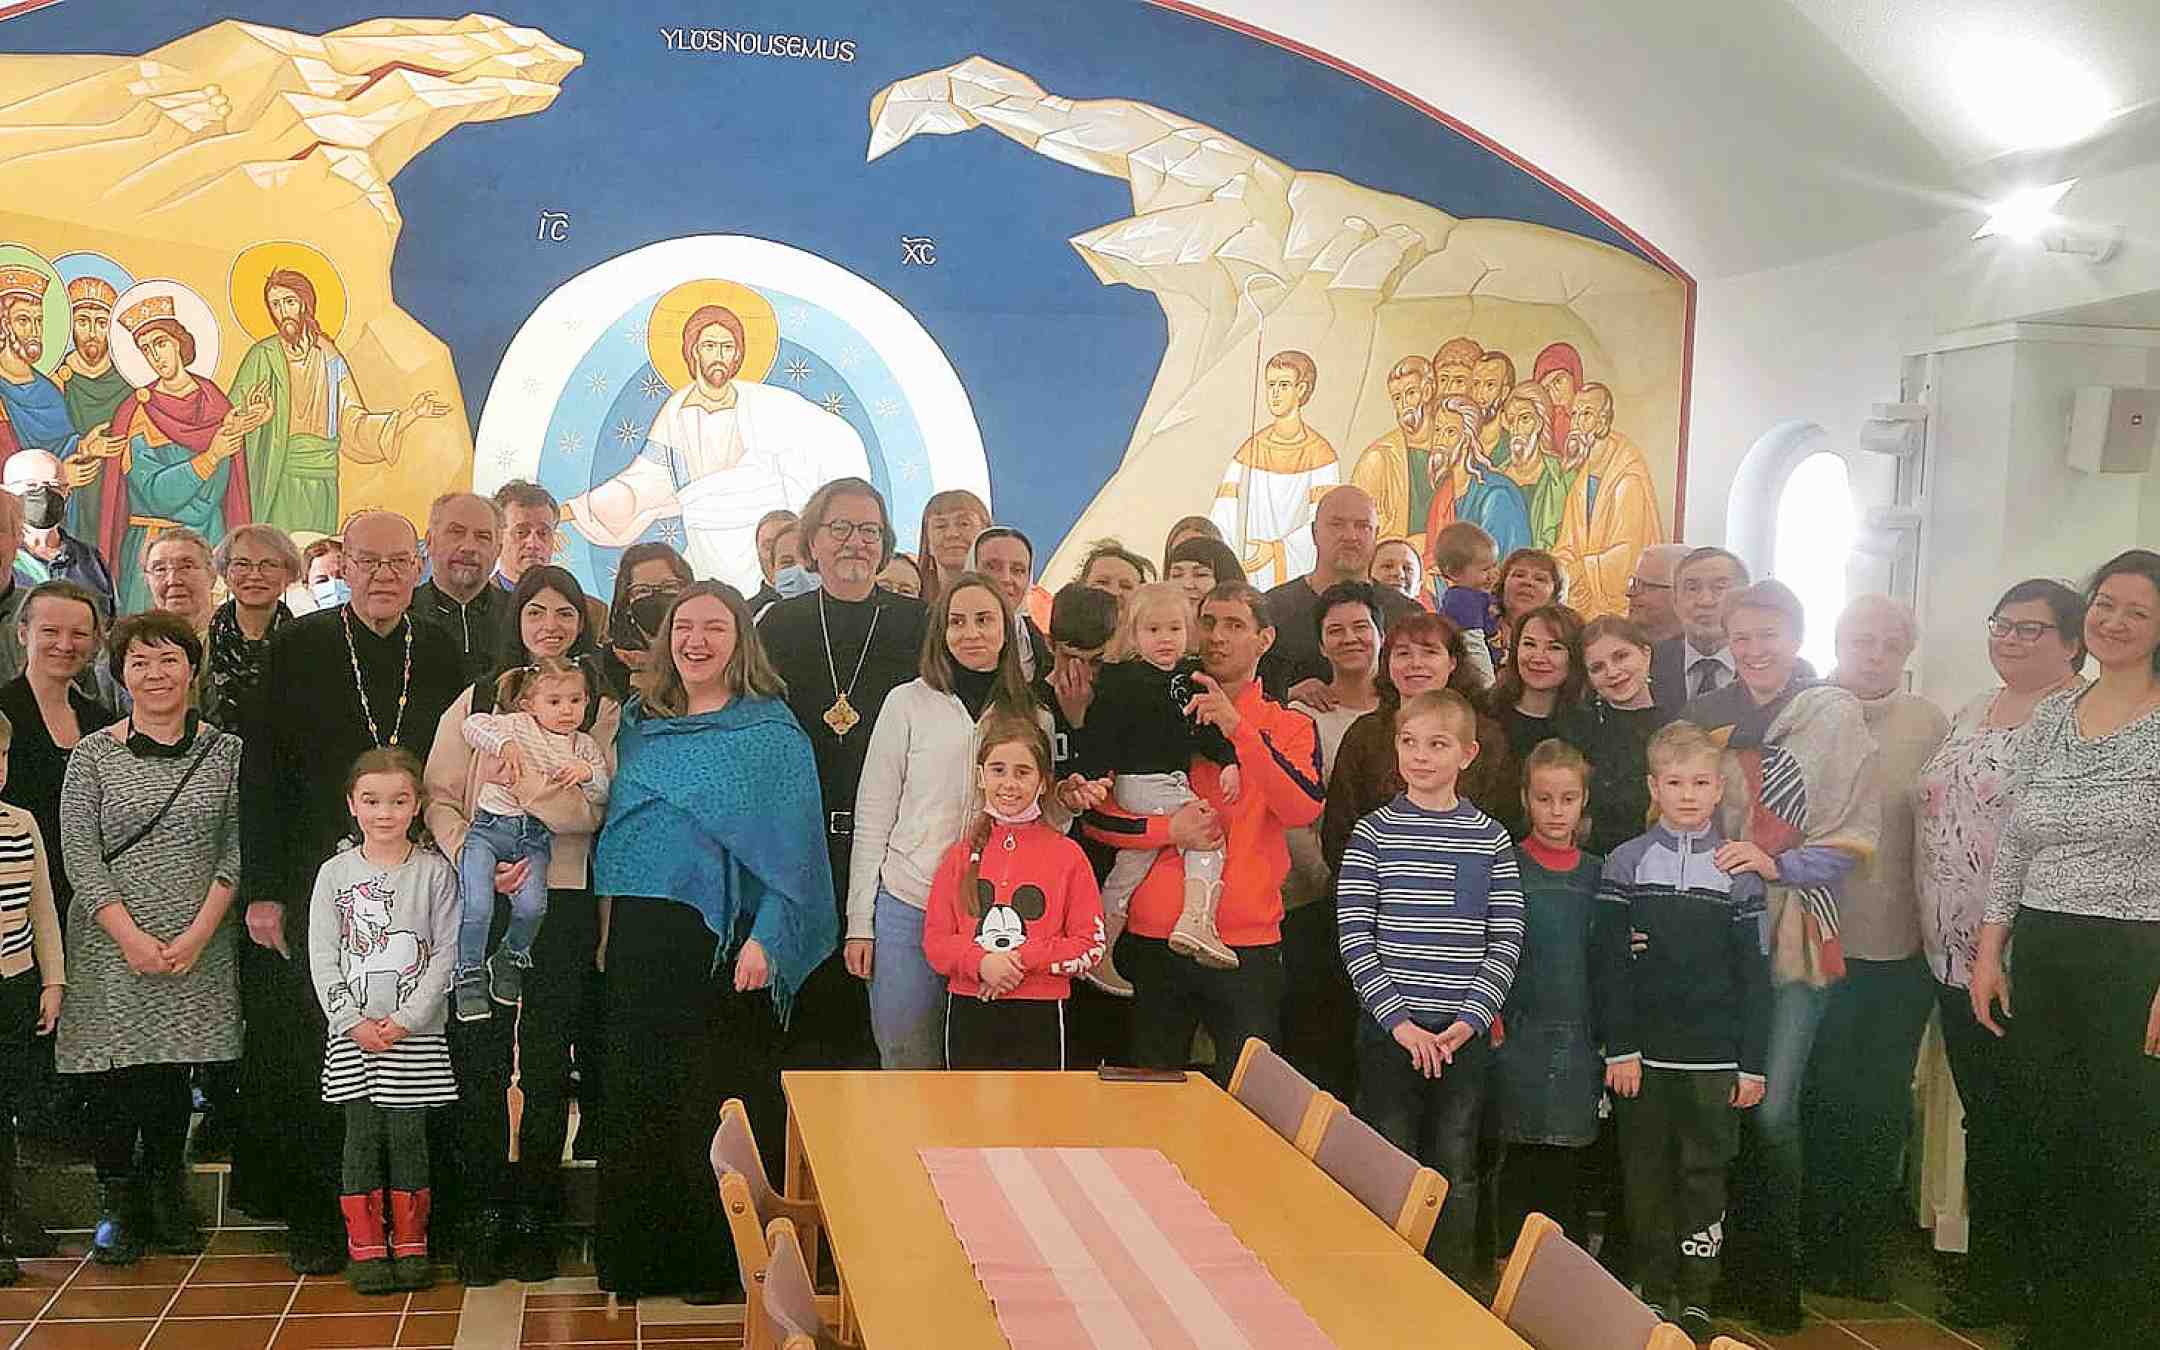 Ukrainan pakolaisia ja seurakunnan työntekijöitä Kuopion ortodoksisen seurakunnan seurakuntasalissa ryhmäkuvassa